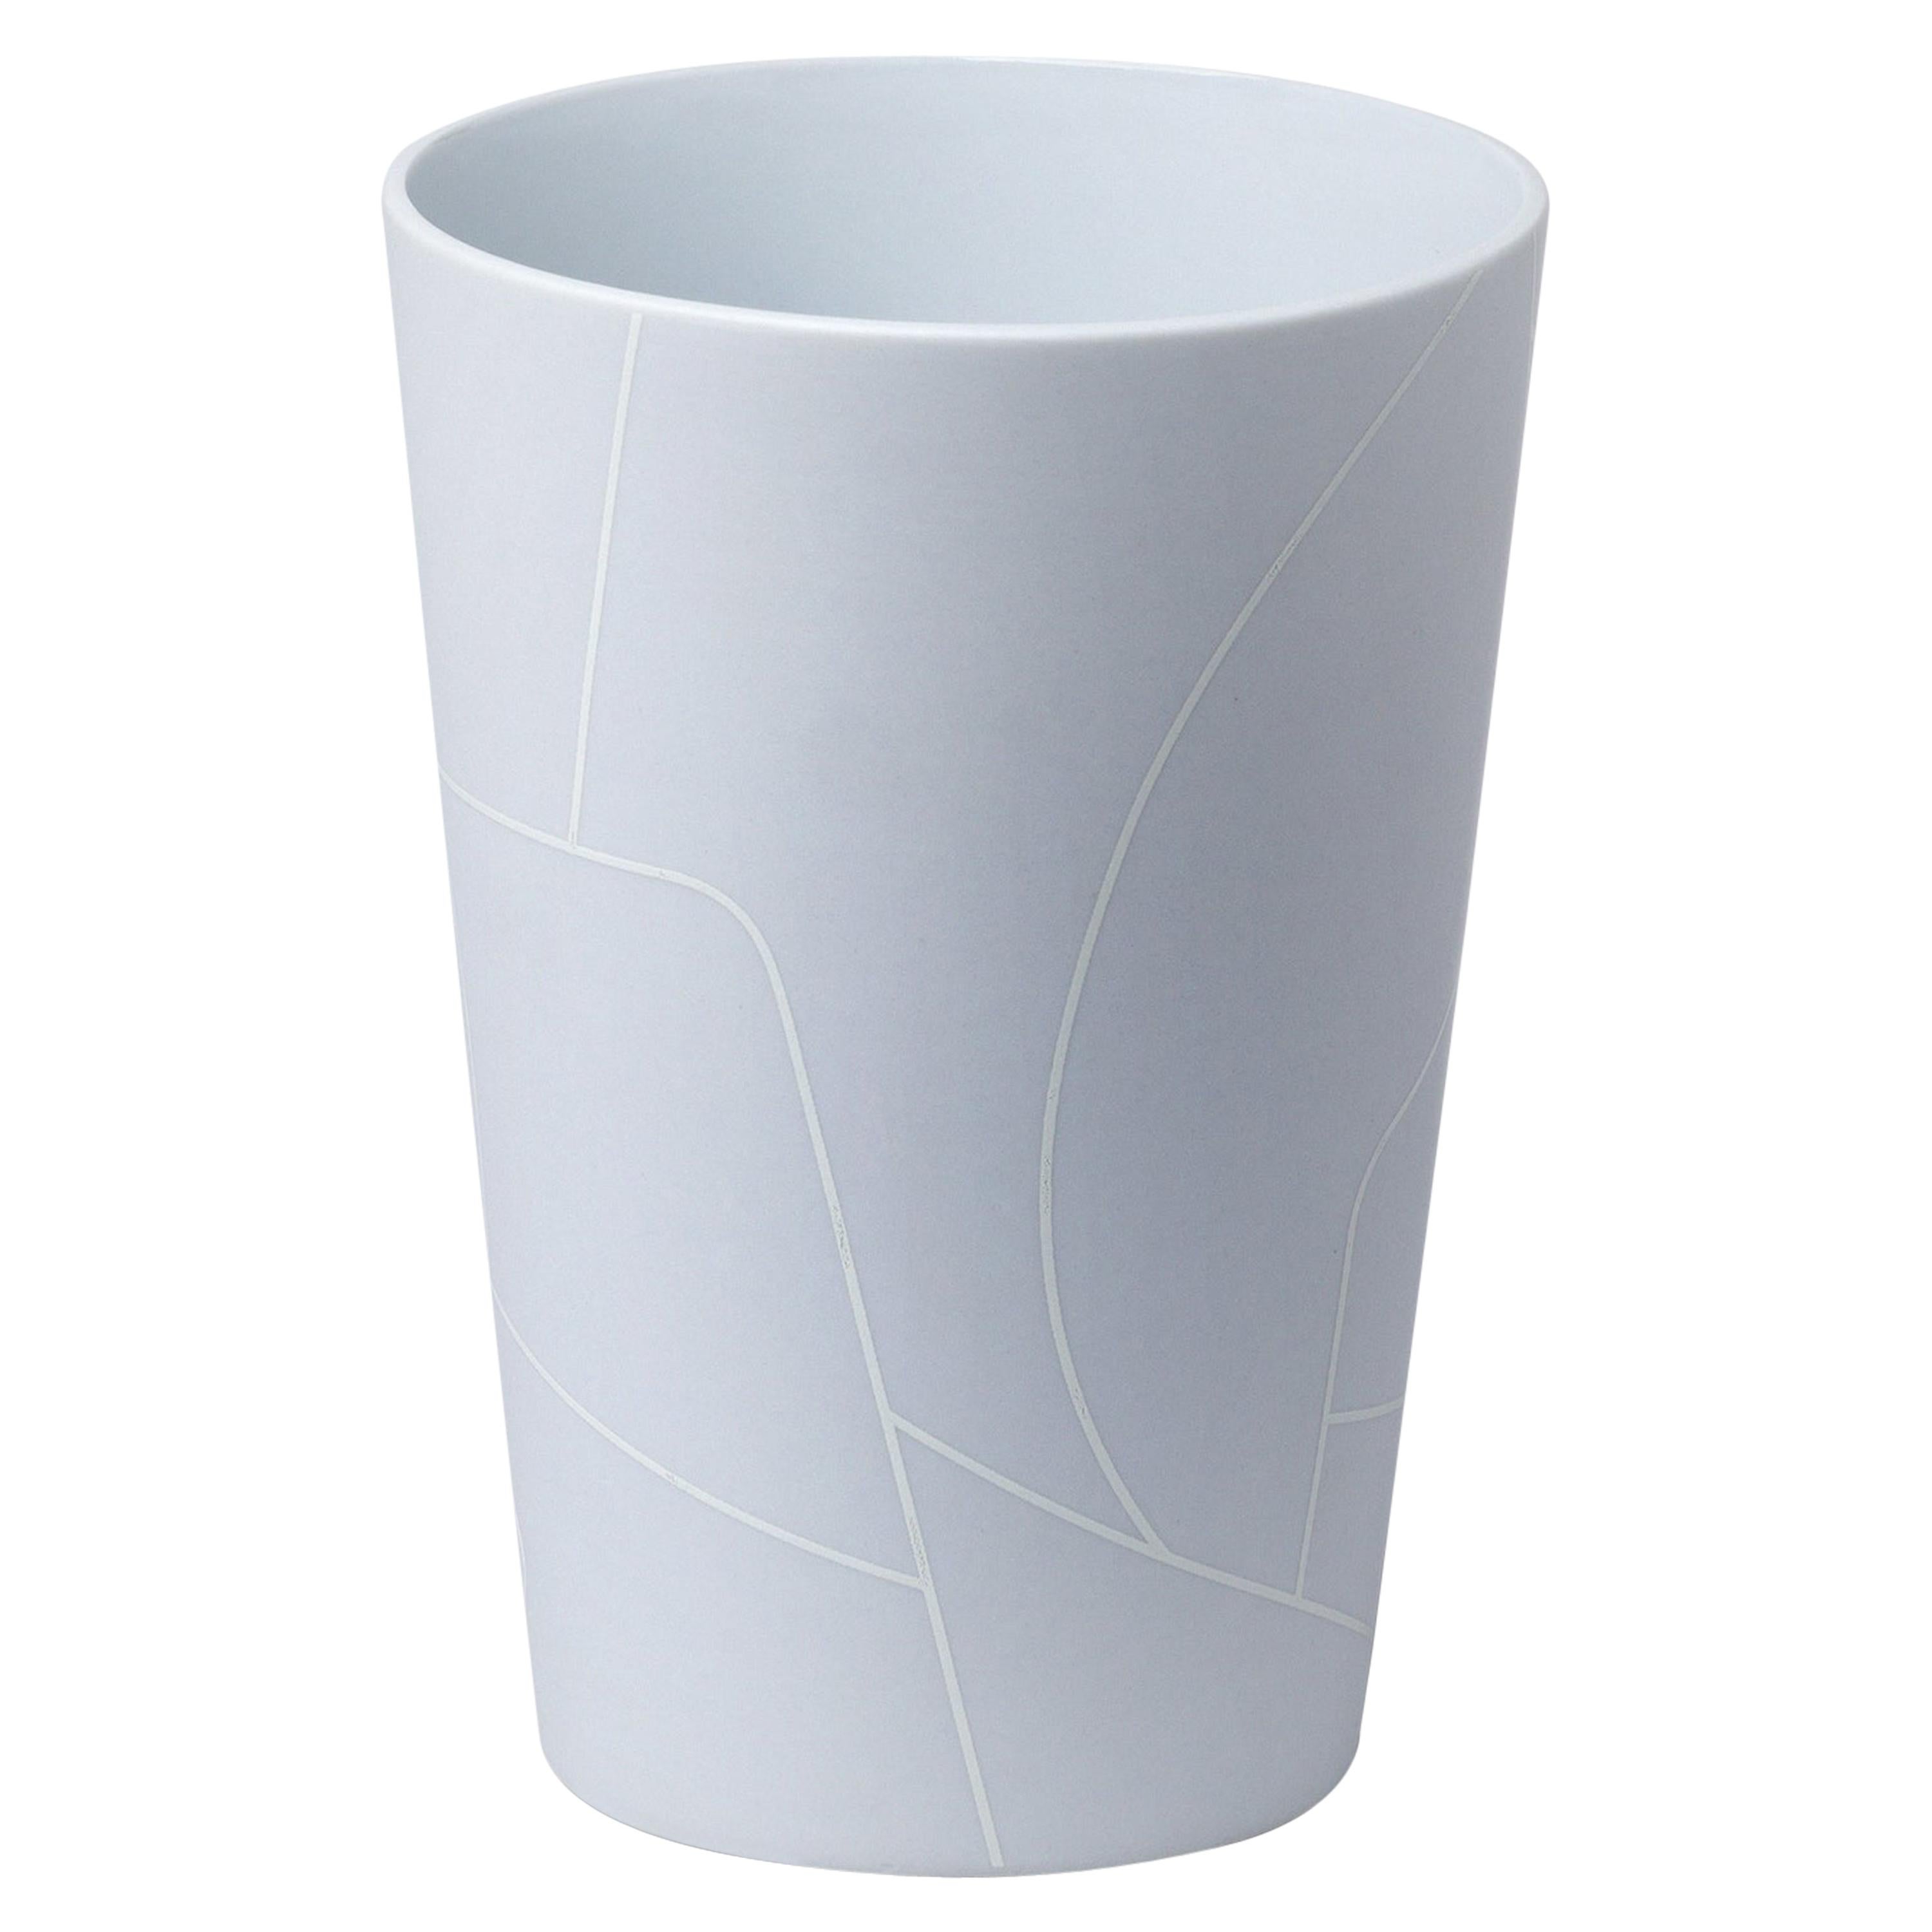 Petit vase conique inversé en céramique gris clair mat avec motif de lignes graphiques